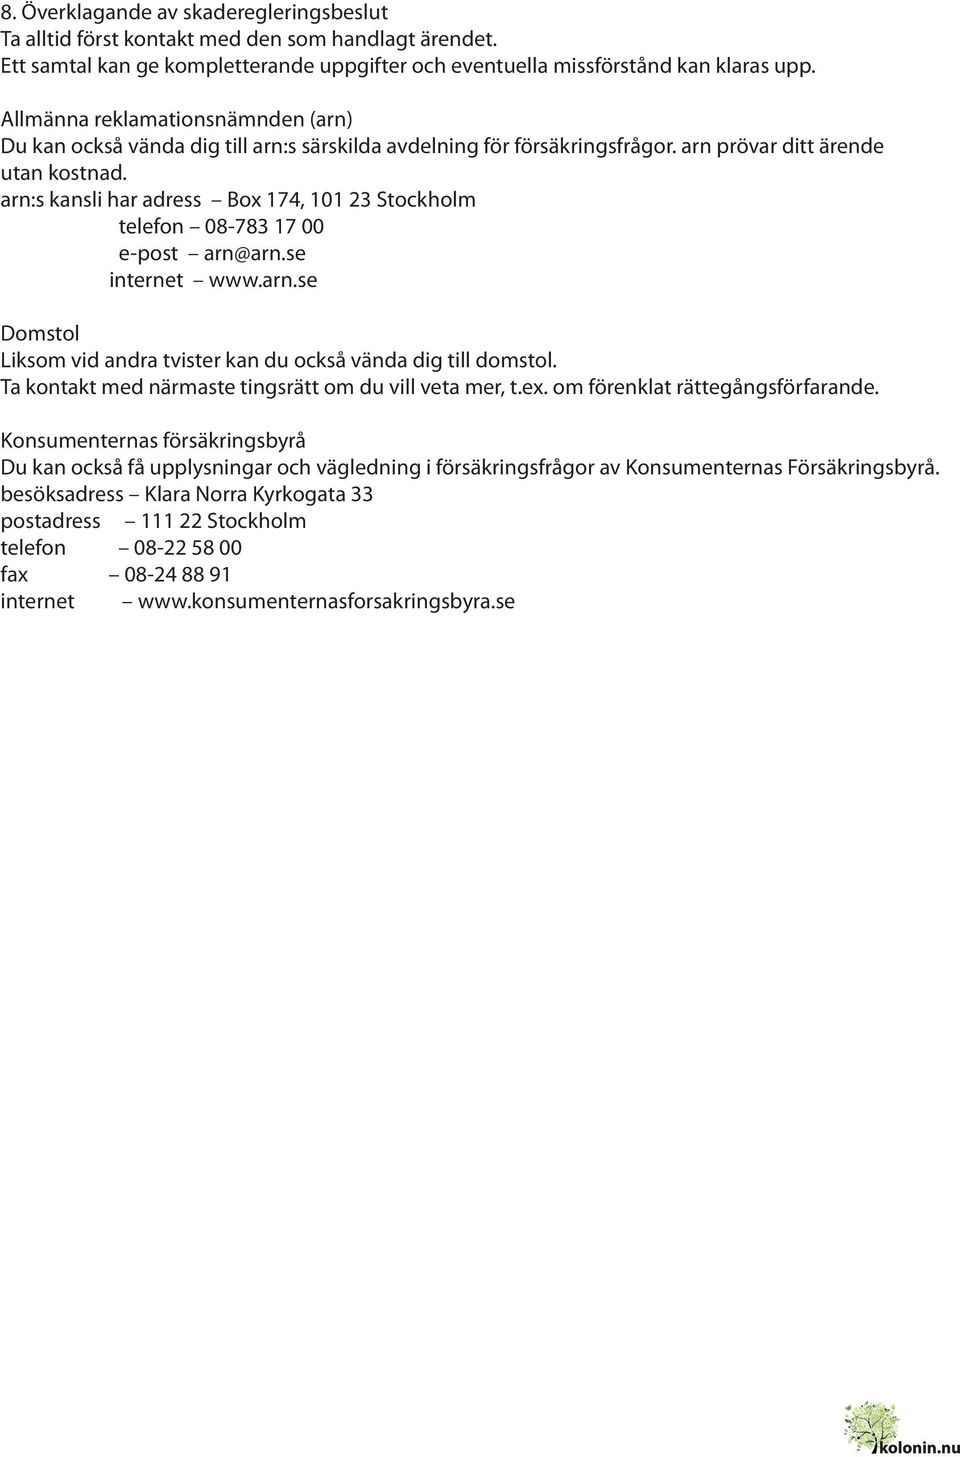 arn:s kansli har adress Box 174, 101 23 Stockholm telefon 08-783 17 00 e-post arn@arn.se internet www.arn.se Domstol Liksom vid andra tvister kan du också vända dig till domstol.